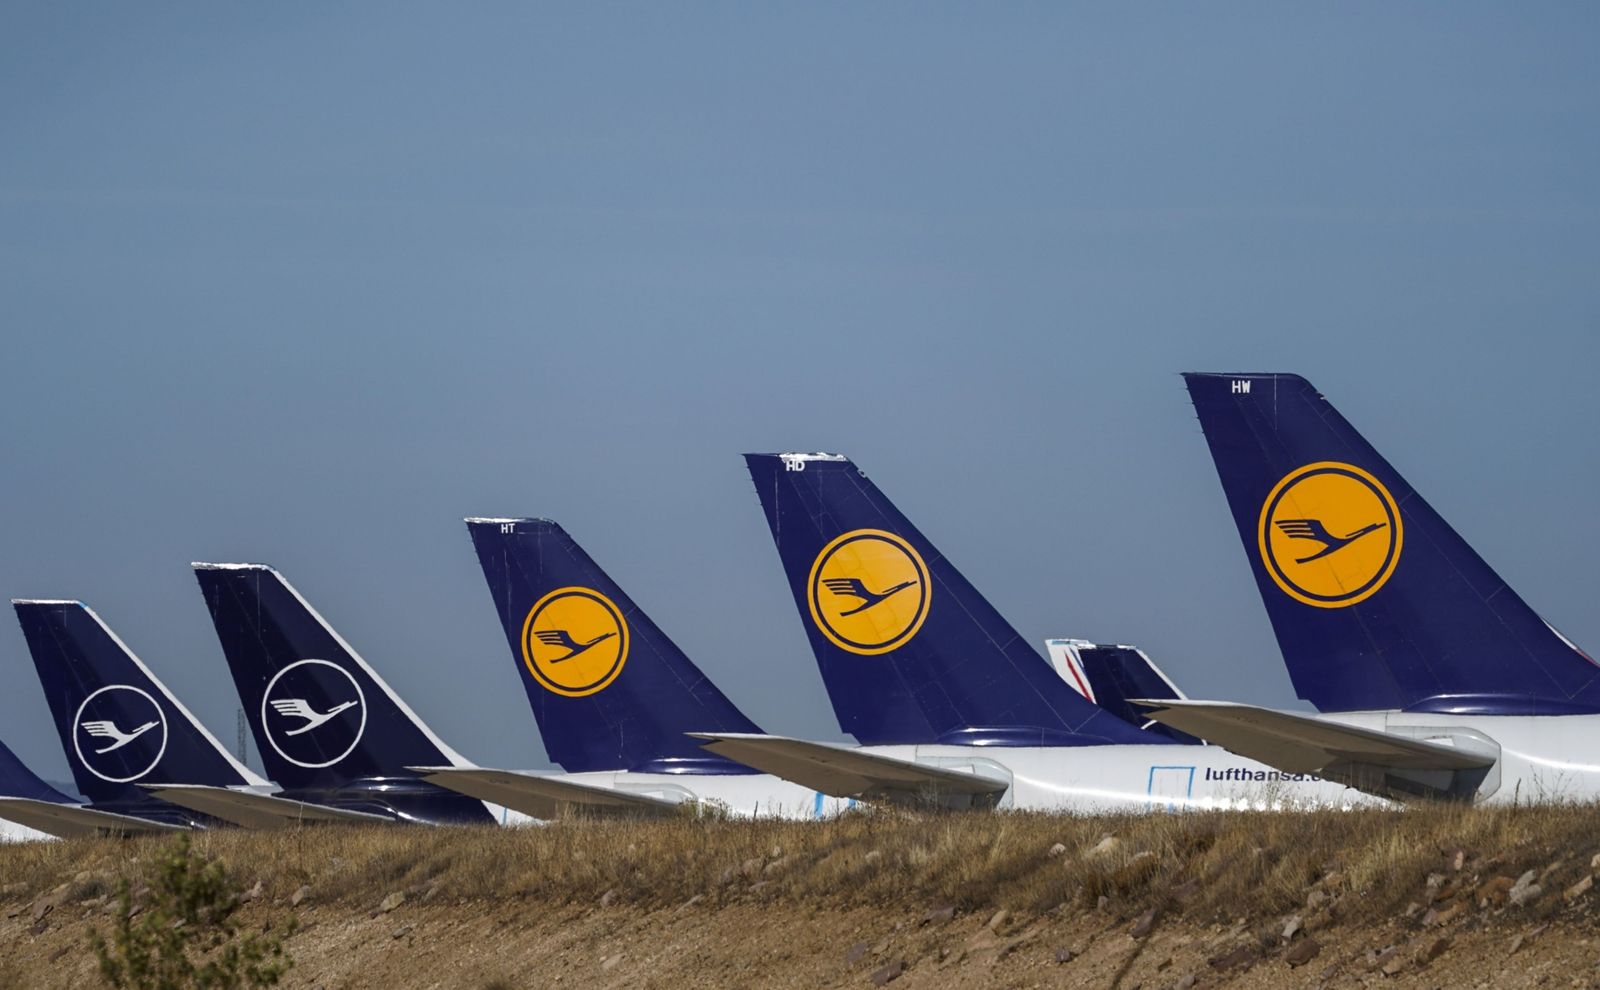 أكبر شركة طيران أوروبية تتكبد خسائر بـ8.1 مليار دولار في 2020